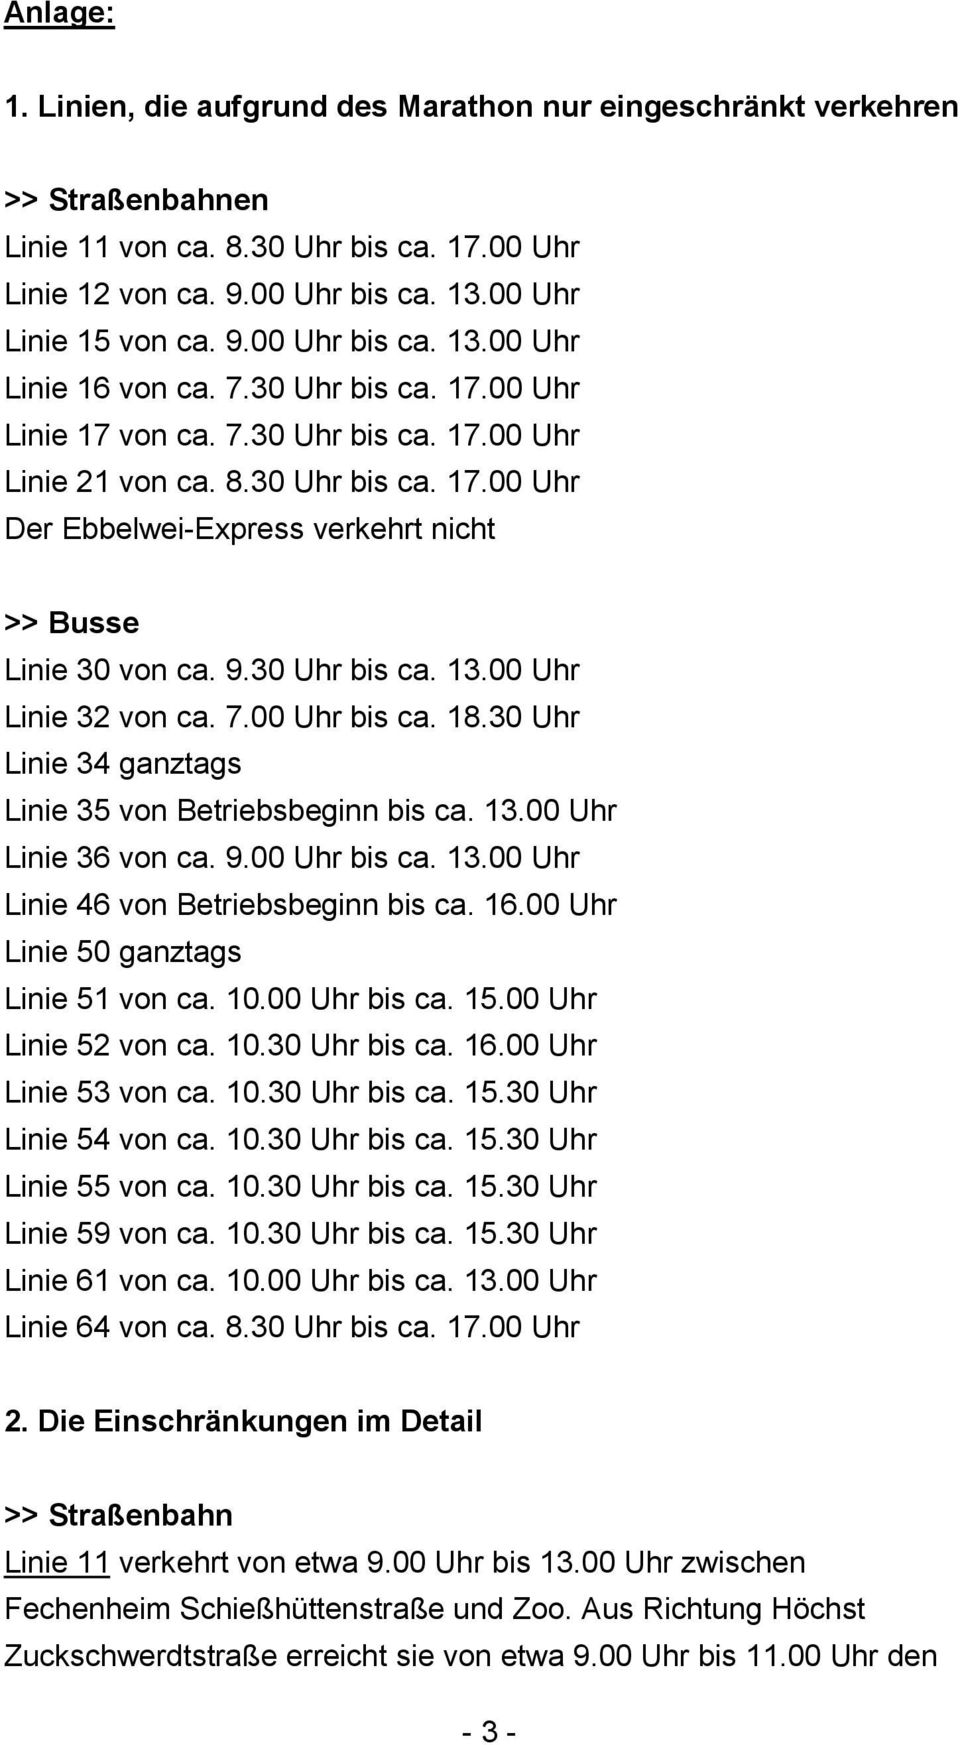 00 Uhr Linie 32 von ca. 7.00 Uhr bis ca. 18.30 Uhr Linie 34 ganztags Linie 35 von Betriebsbeginn bis ca. 13.00 Uhr Linie 36 von ca. 9.00 Uhr bis ca. 13.00 Uhr Linie 46 von Betriebsbeginn bis ca. 16.